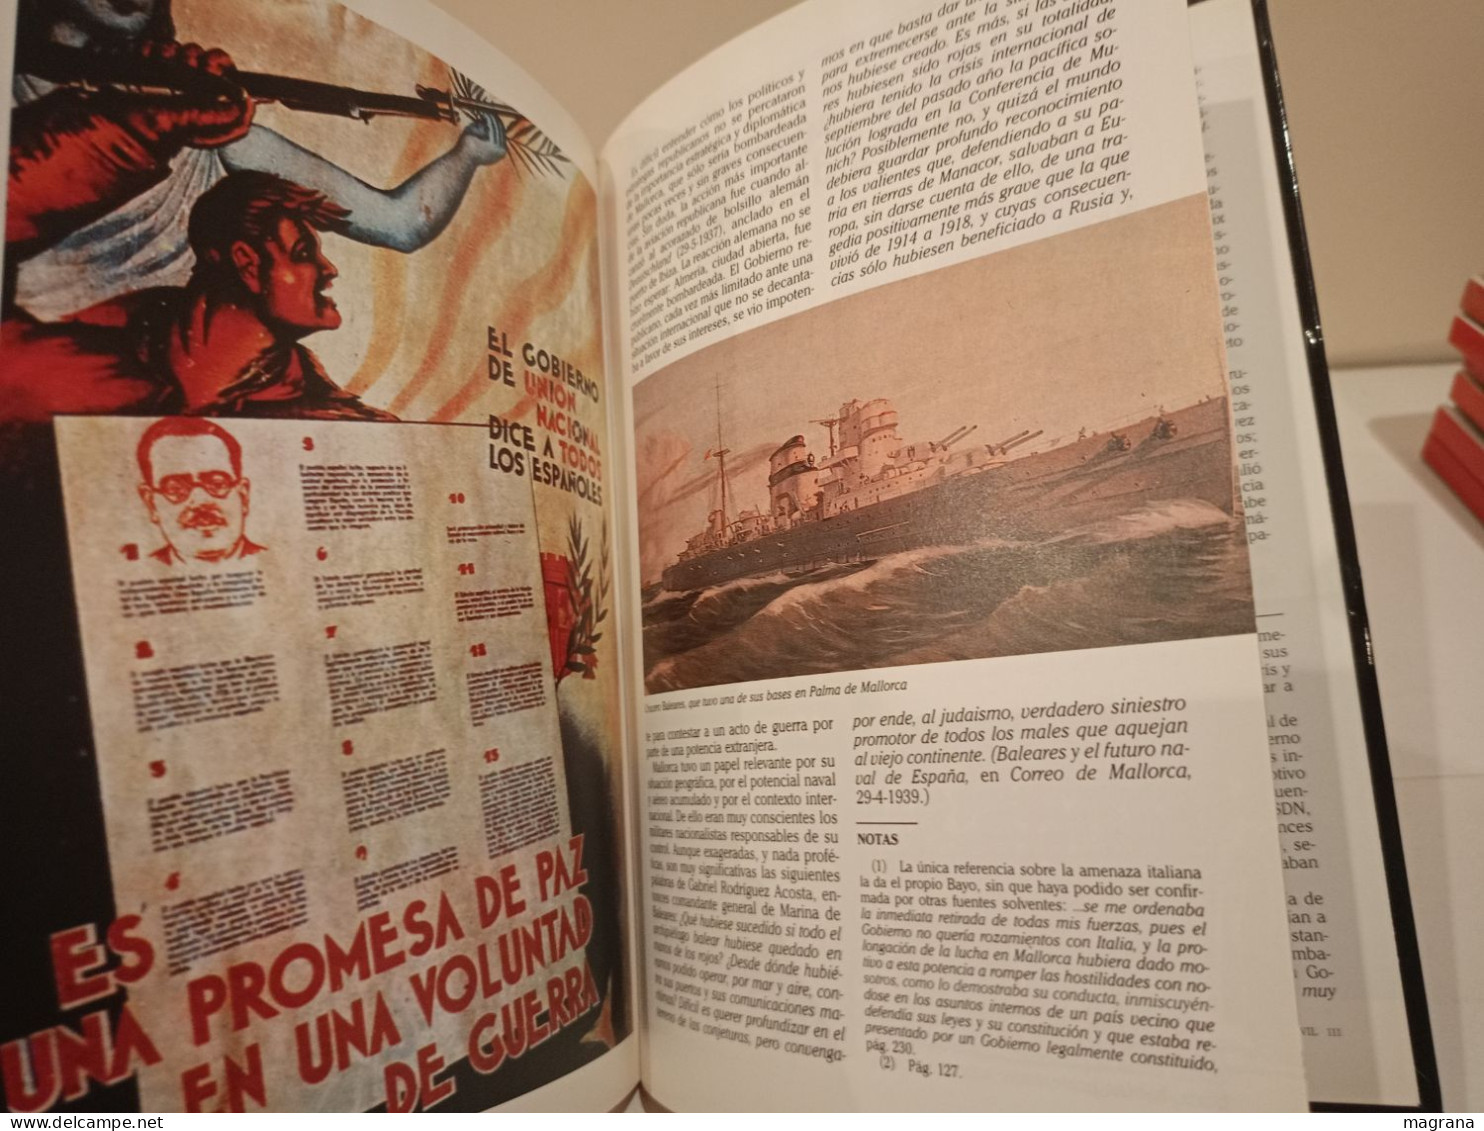 La Guerra Civil Española. 21- La Batalla del Ebro. Ediciones Folio. 1997. 117 páginas. Idioma: Español.